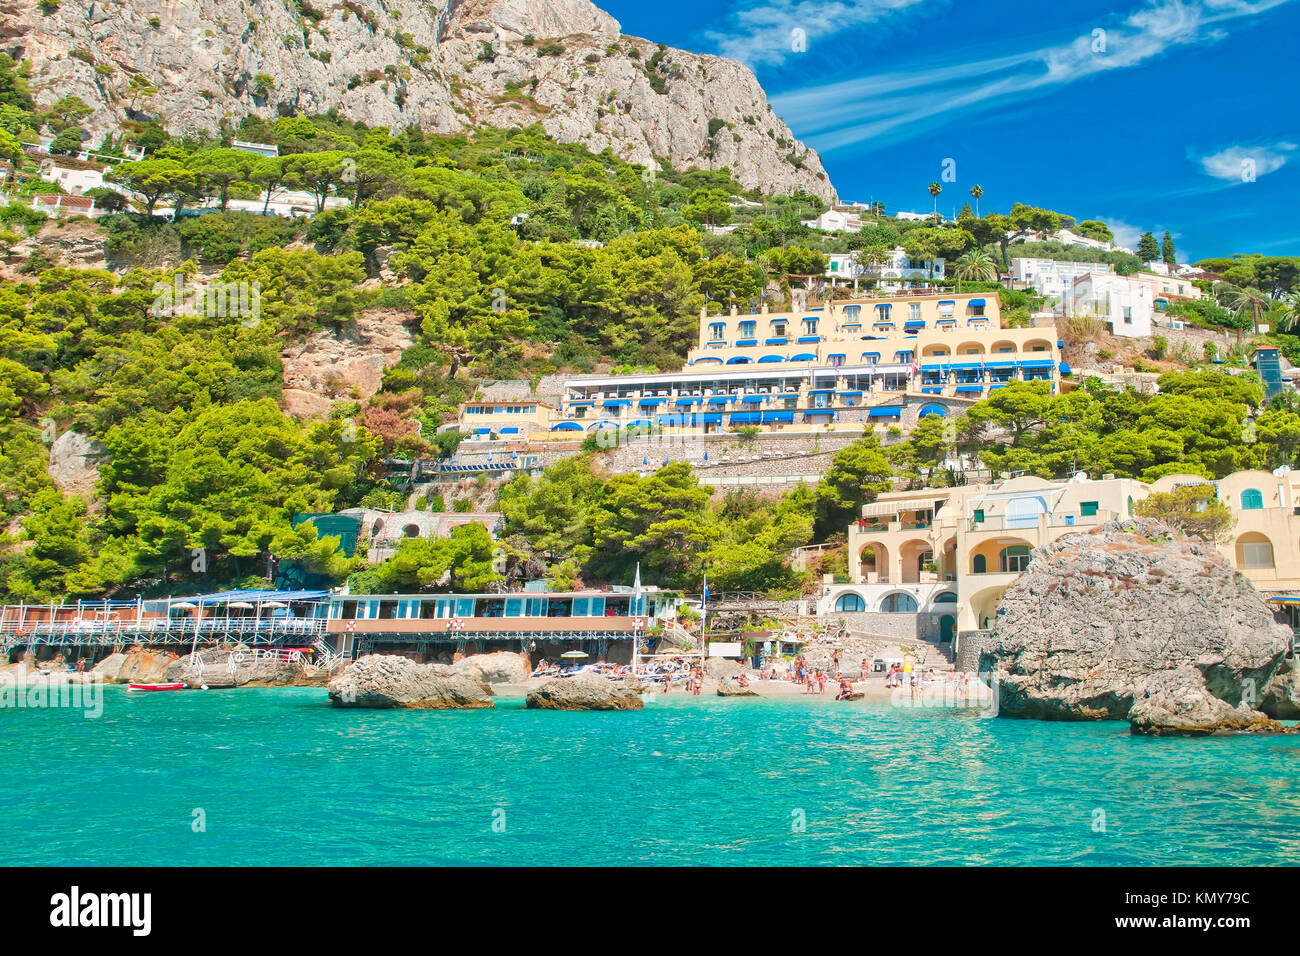 Vue sur plage de Marina Piccola à partir de la mer avec vue sur la montagne, les hôtels et restaurants derrière elle aux beaux jours de l'été, Capri, Italie Banque D'Images